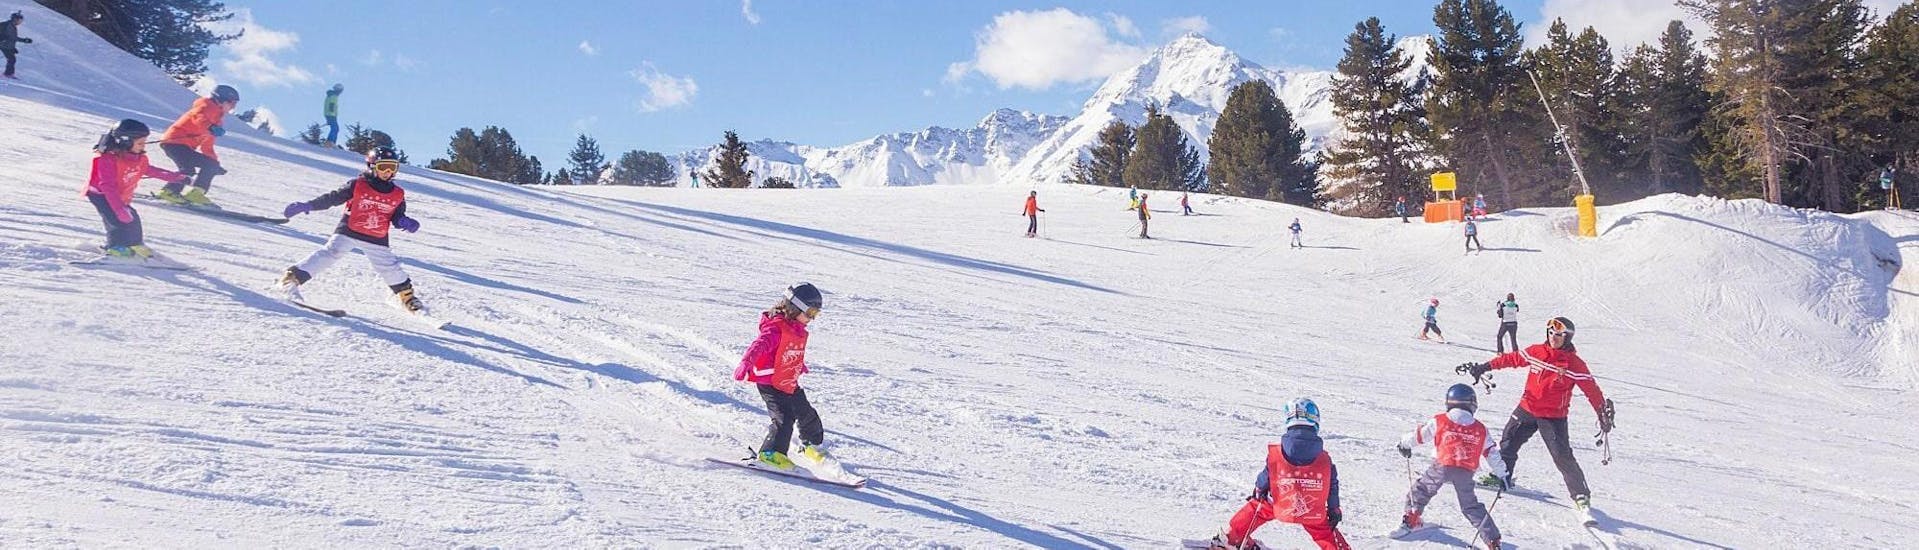 Il maestro di sci della Scuola di Sci Sertorelli Bormio è sulla pista con i bambini durante la lezione di sci per bambini (4-12 a.) avanzati - Giornaliere.